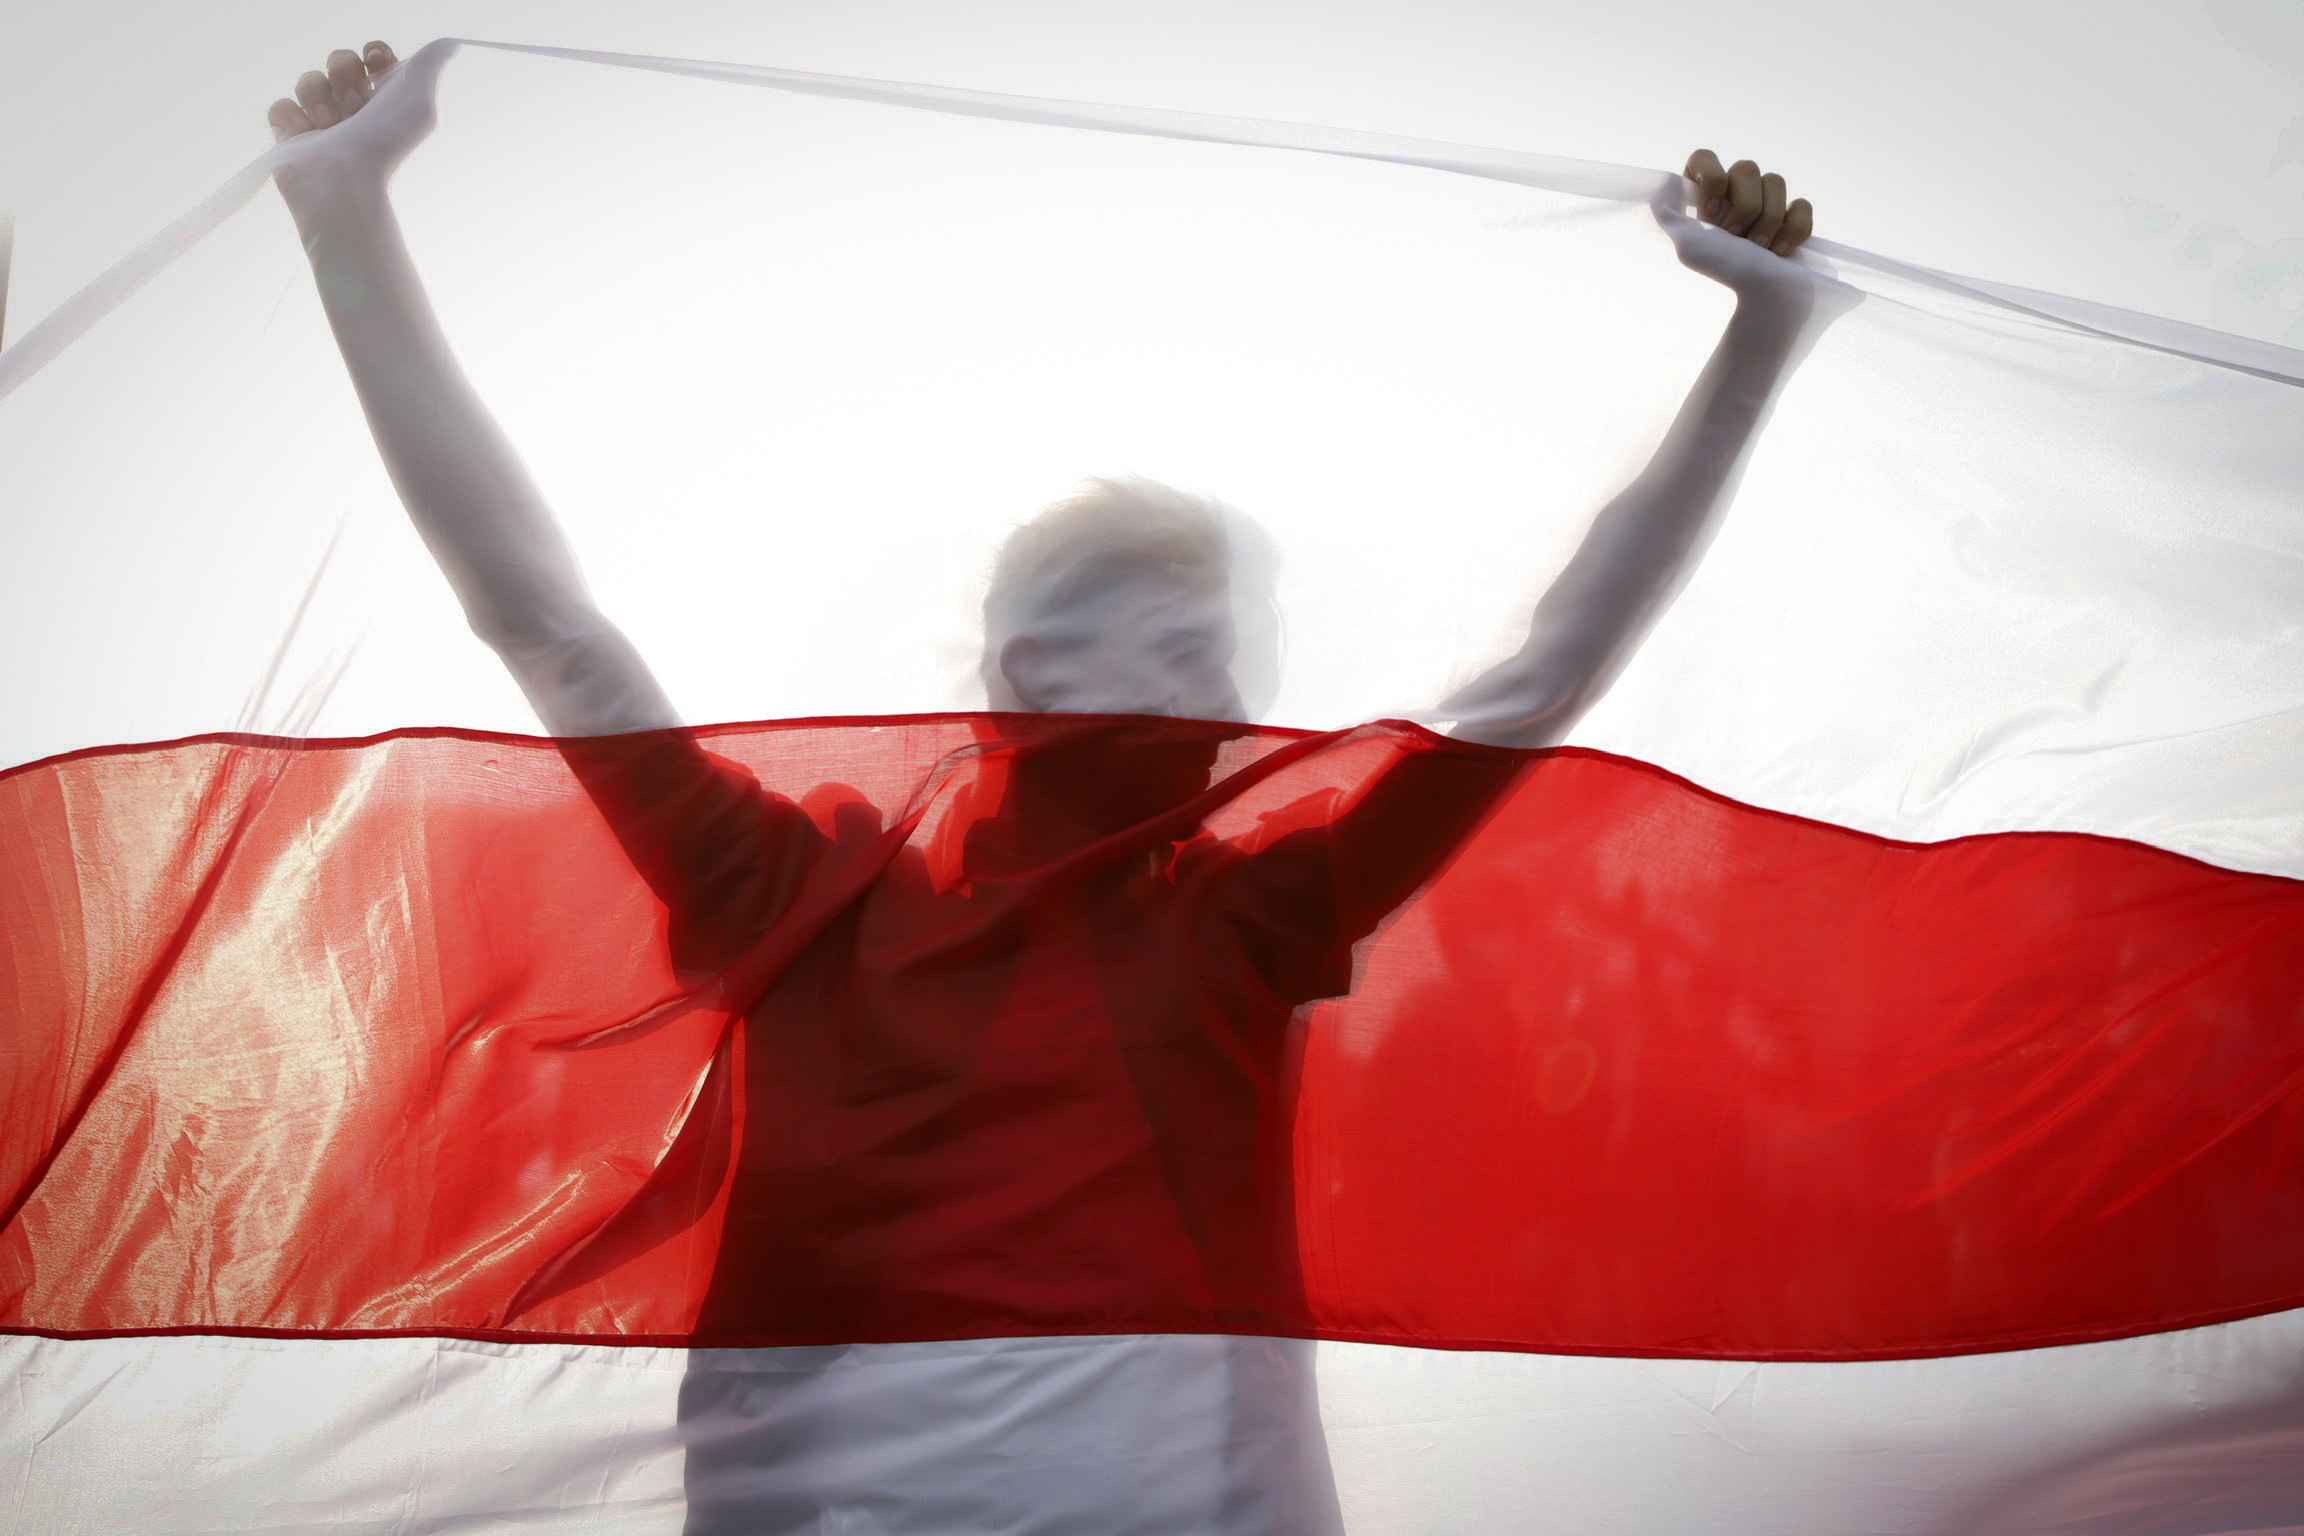 Бело красно белый флаг в россии. Белорусский флаг БЧБ. Бело-красно-белый флаг Беларуси протест. Бело-красный флаг Белоруссии. Флаг белорусской оппозиции бело красно белый.